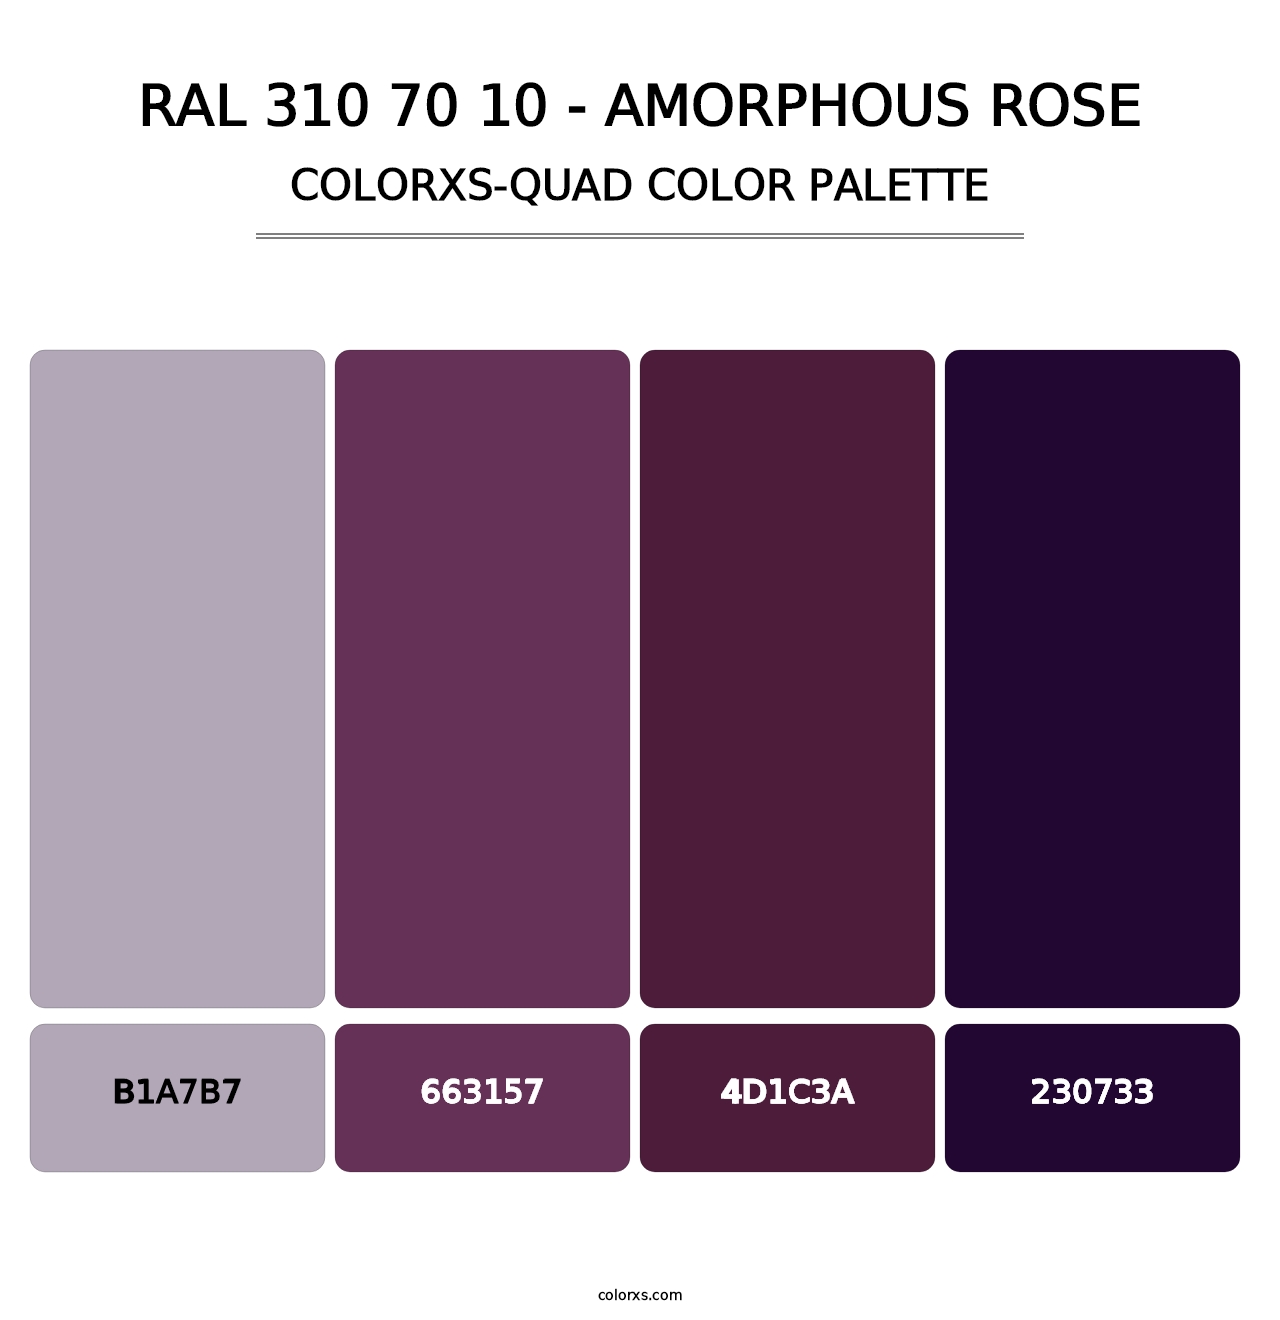 RAL 310 70 10 - Amorphous Rose - Colorxs Quad Palette